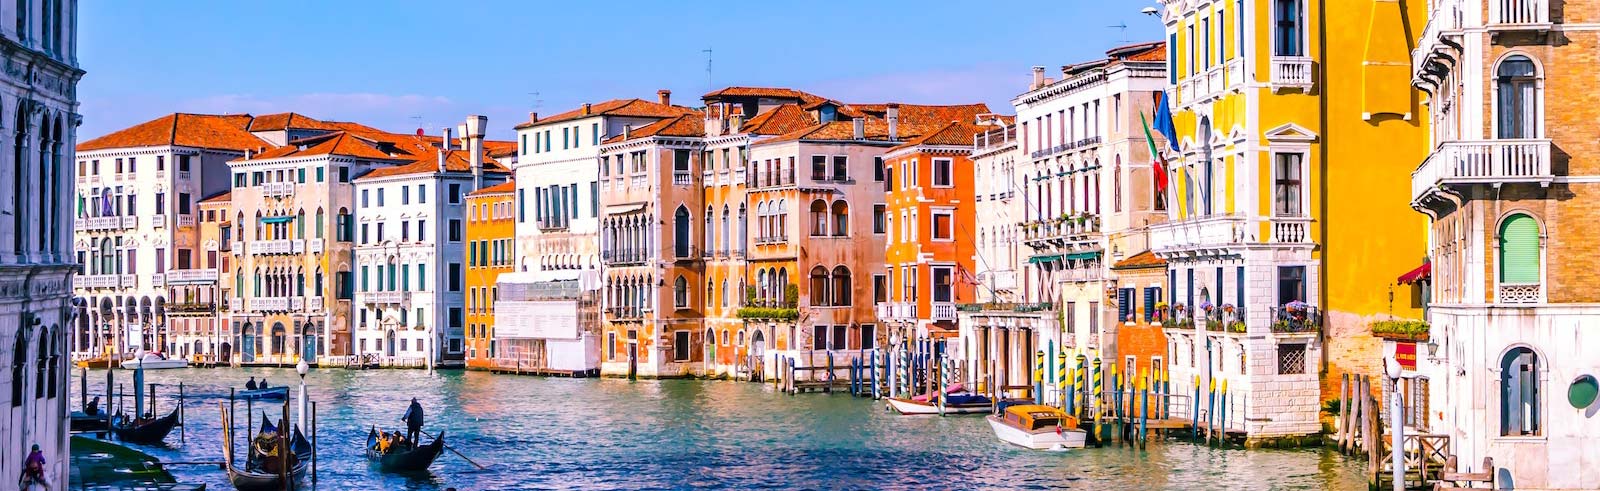 תעלת ונציה איטליה עם בניינים צבעוניים